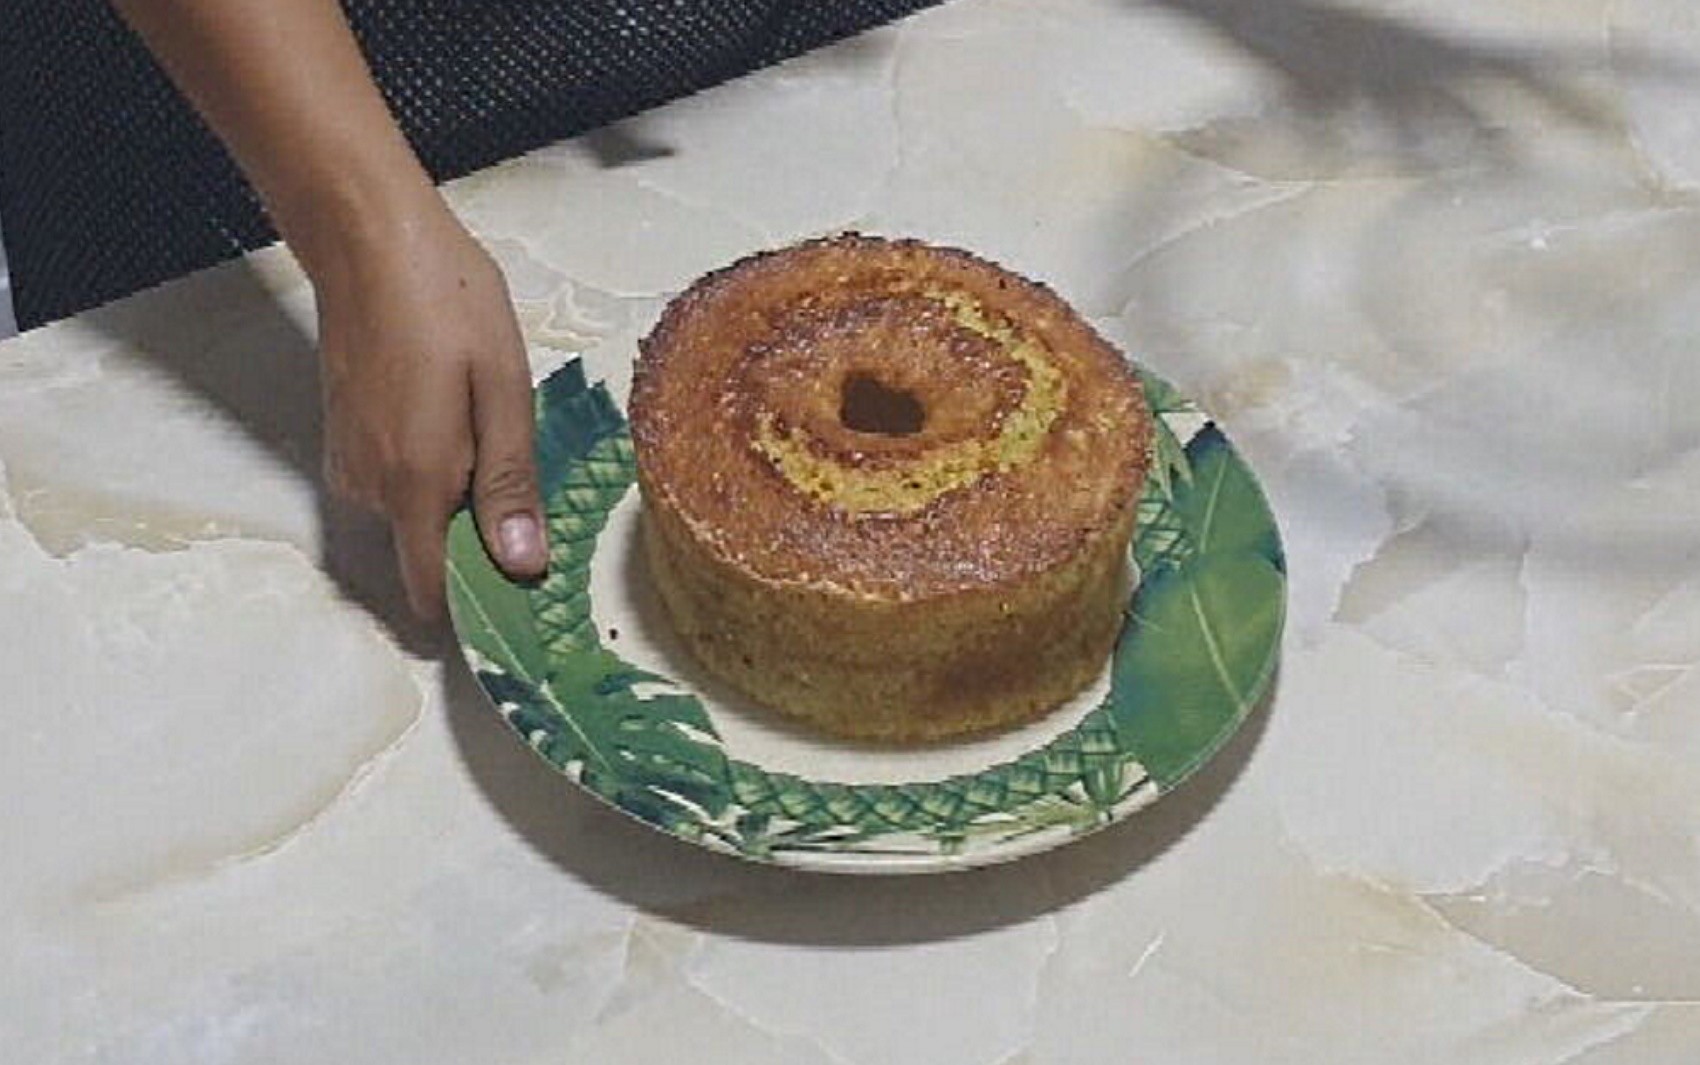 Aprenda a receita de bolo de milho com requeijão feito com biomassa de banana verde